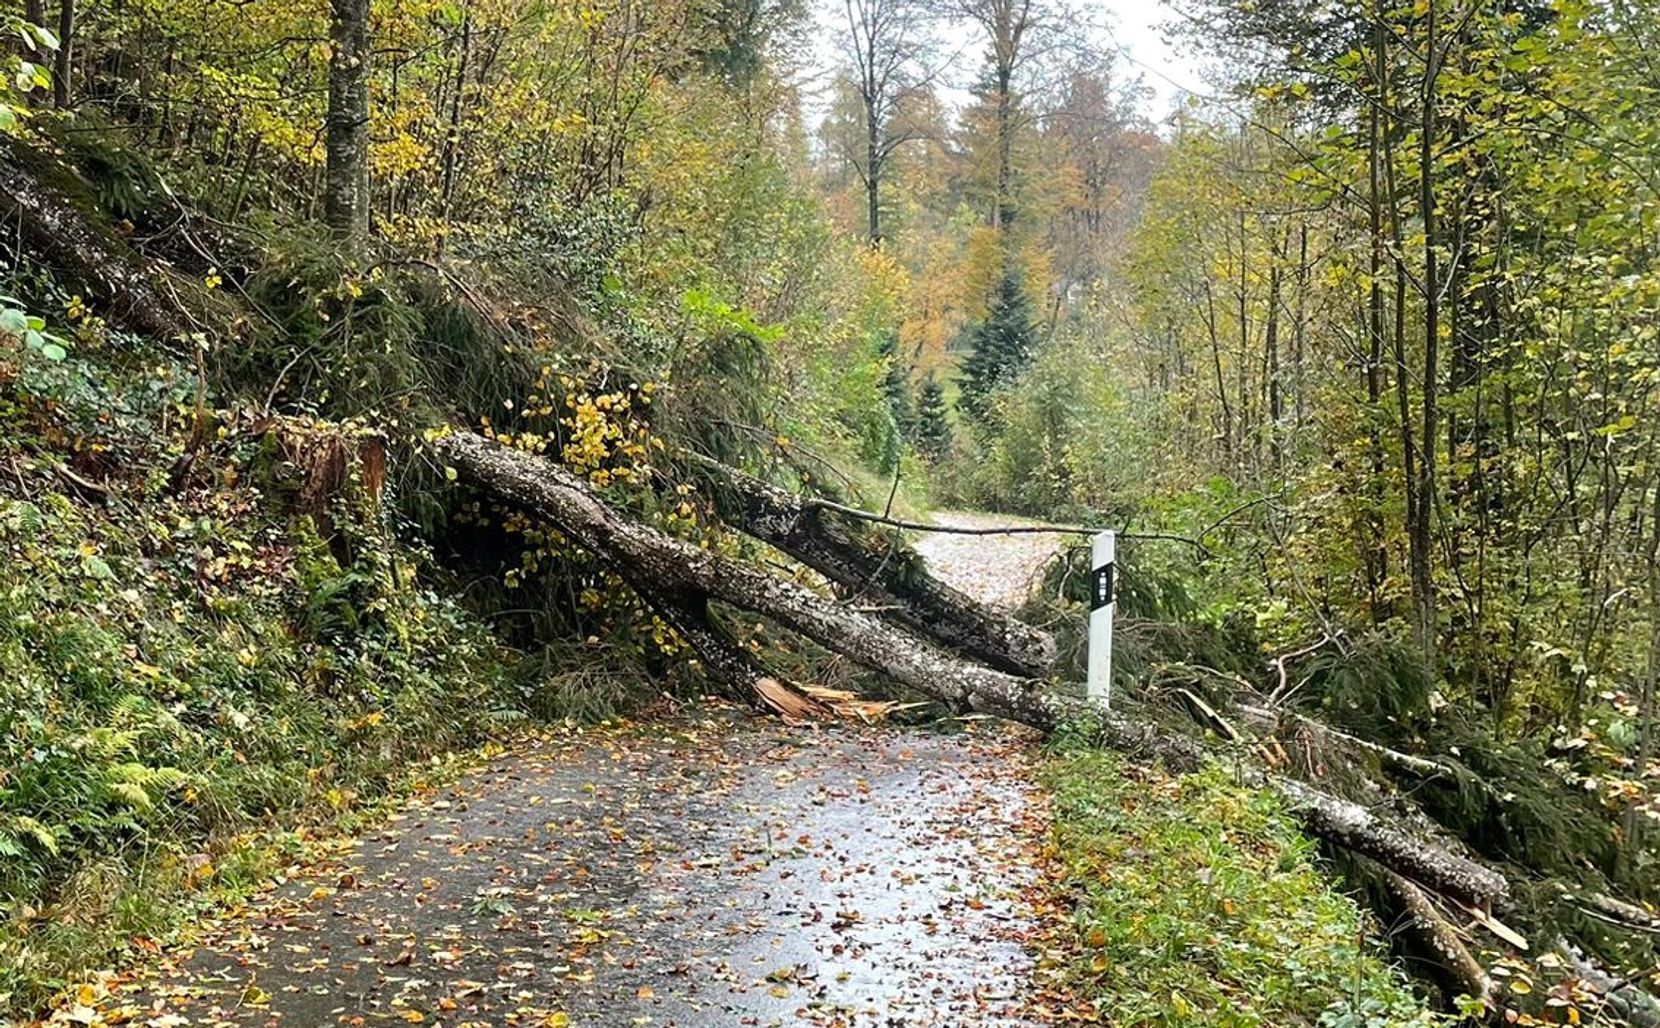 Man sieht eine Waldstrasse, die von einem umgestürzten Baum blockiert wird.